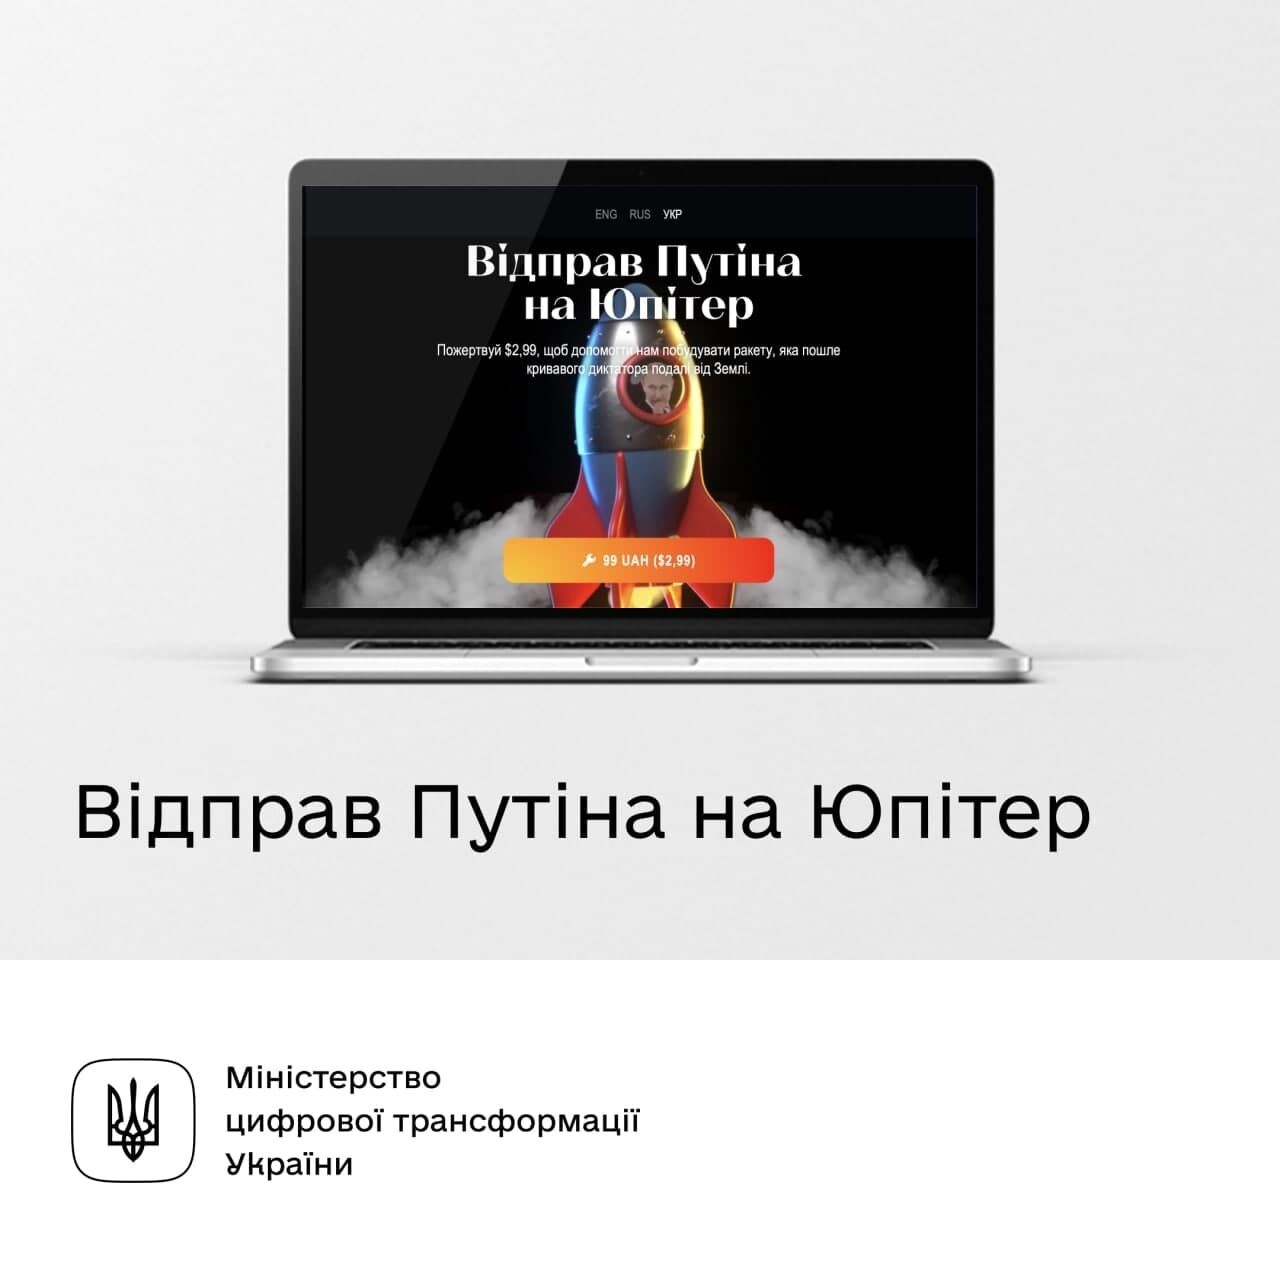 Логотип флешмоба "Отправь Путина на Юпитер"